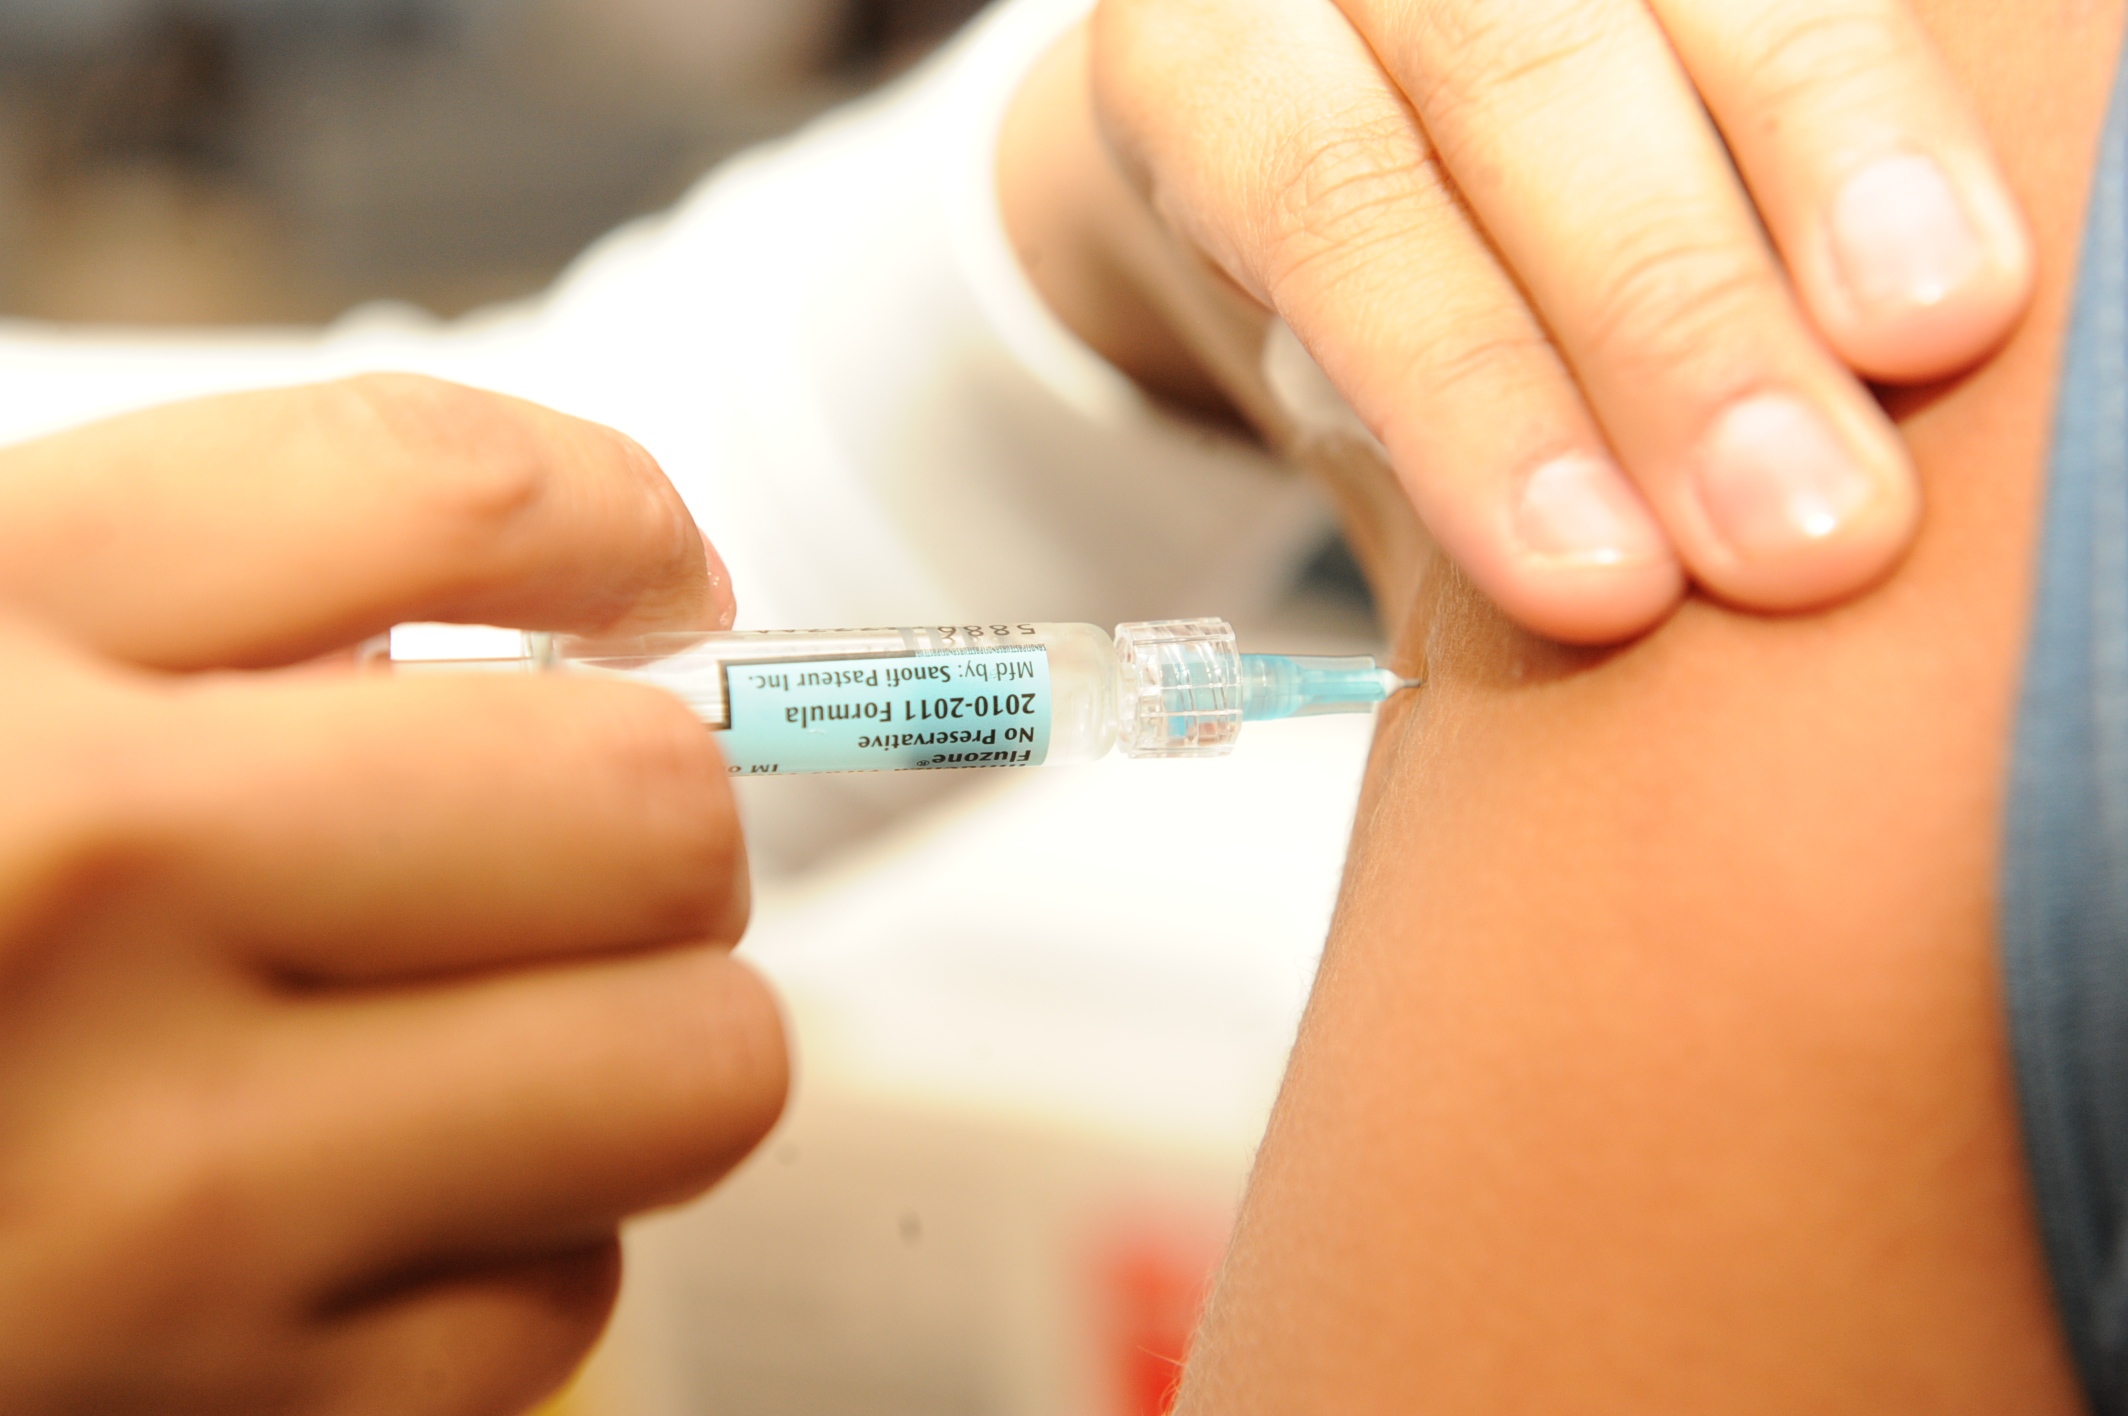 Concórdia vacinou contra a gripe 45% do público-alvo